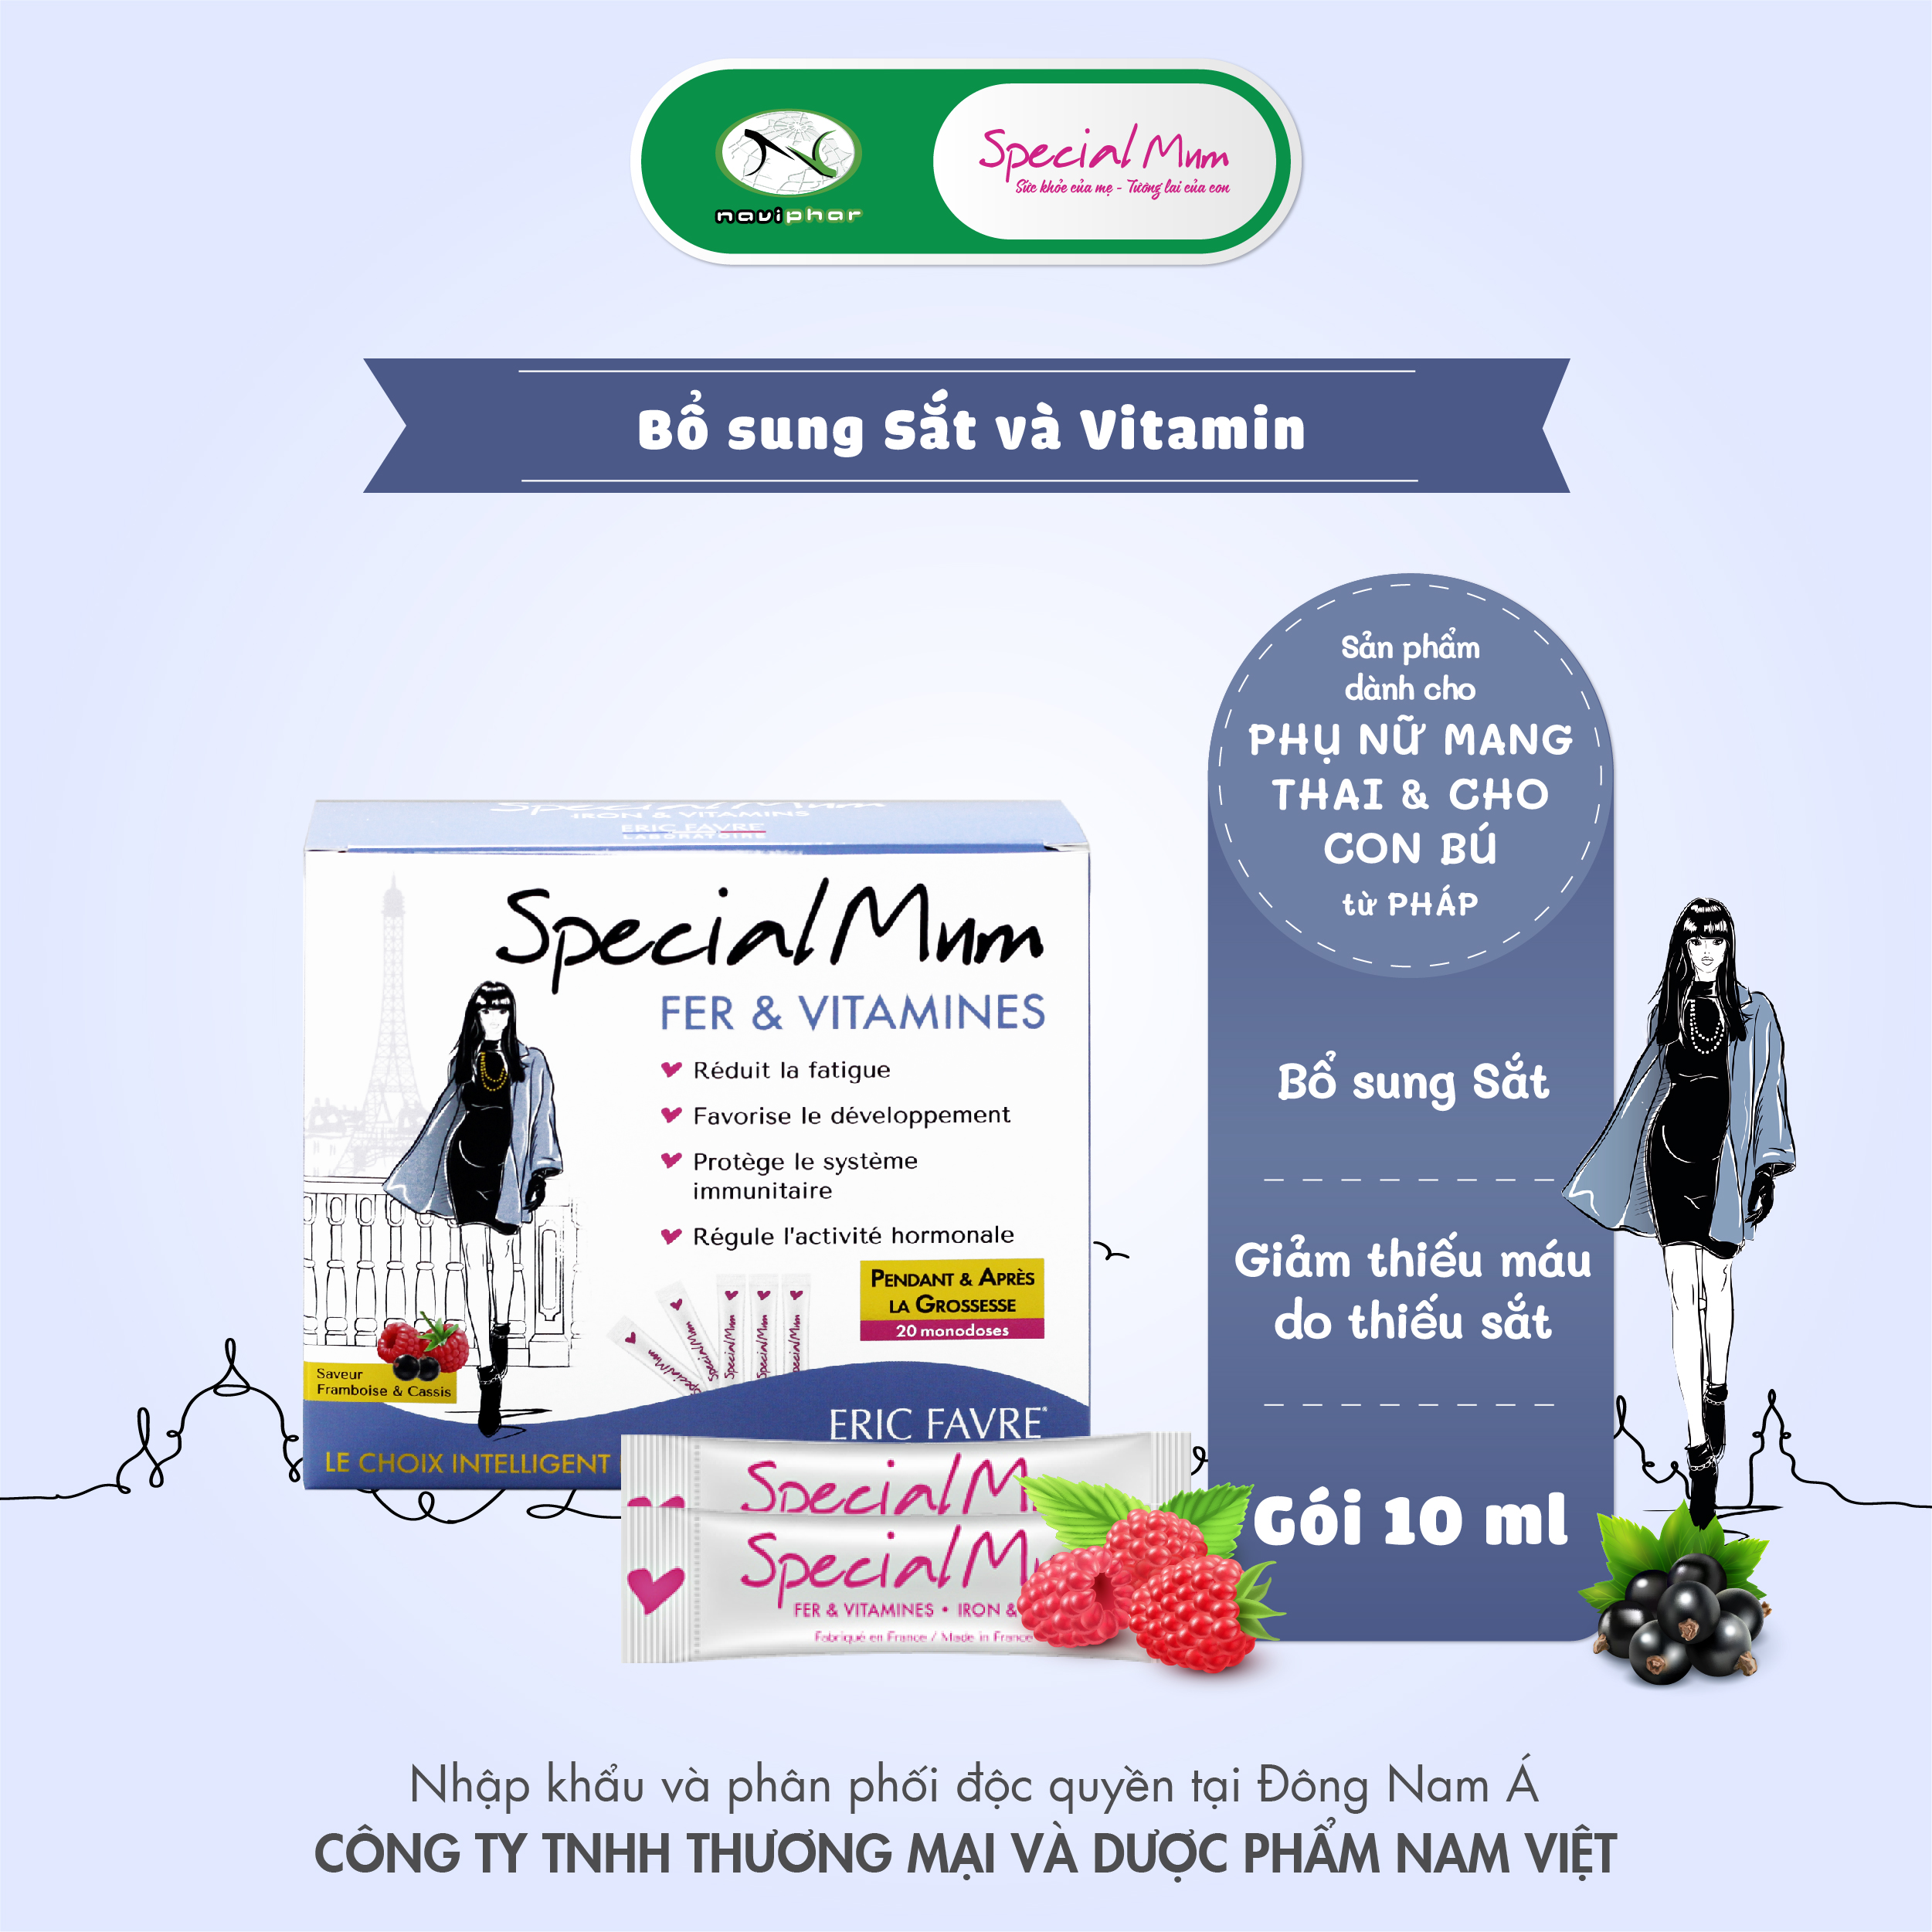 TPBVSK Special Mum Fer & Vitamines - Bổ sung sắt và vitamins cho phụ nữ mang thai cho con bú (20 gói) [Nhập khẩu Pháp]